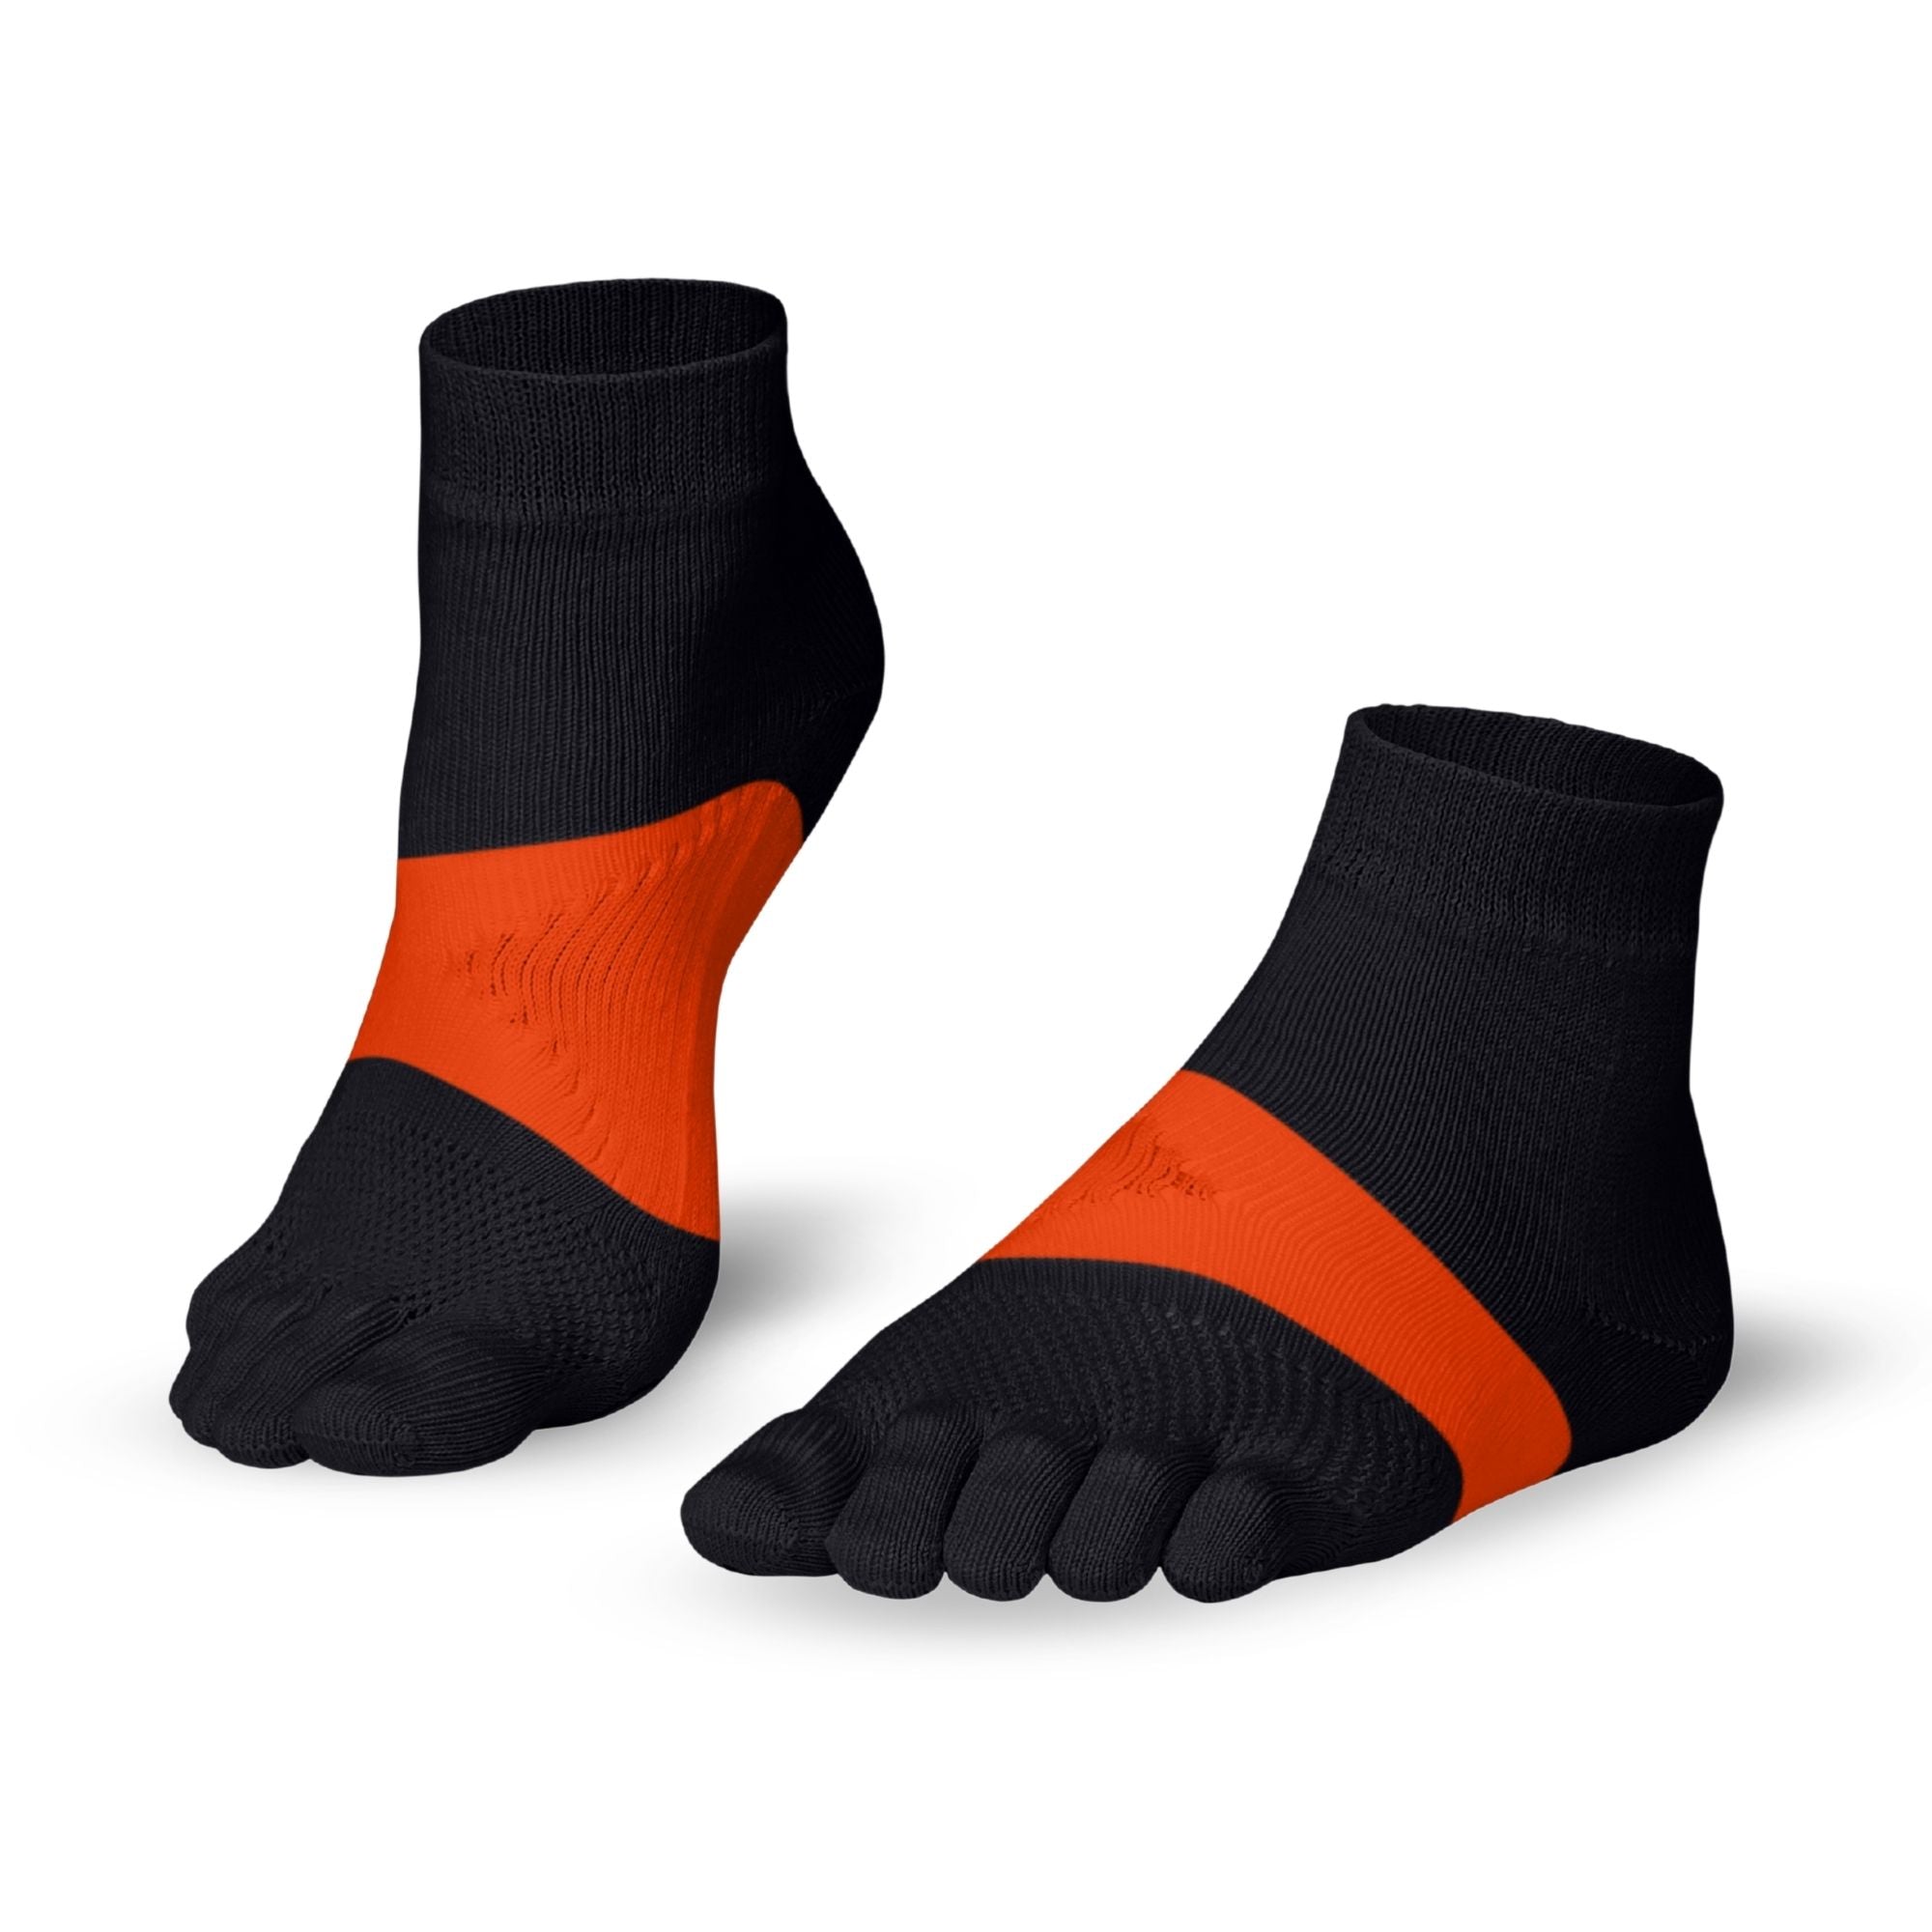 Knitido Calcetines de dedo maratón para deportes y carreras de larga distancia - gris / naranja